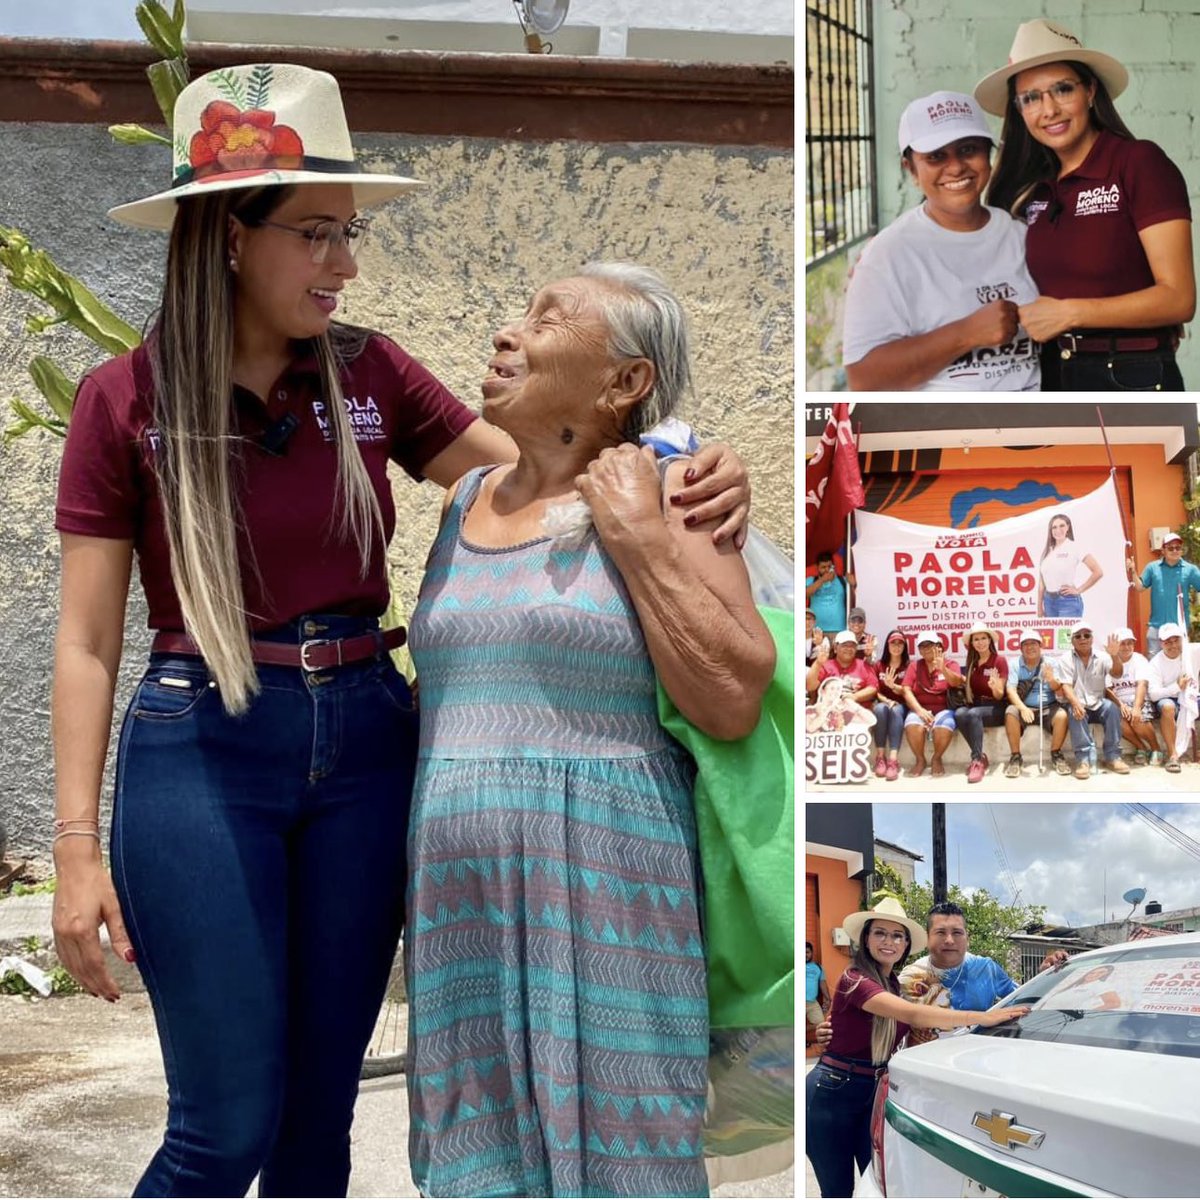 📰 Paola Moreno promete mano firme para mejorar el suministro de agua potable en #Cancún | t.ly/apyP3

#4TNoticias